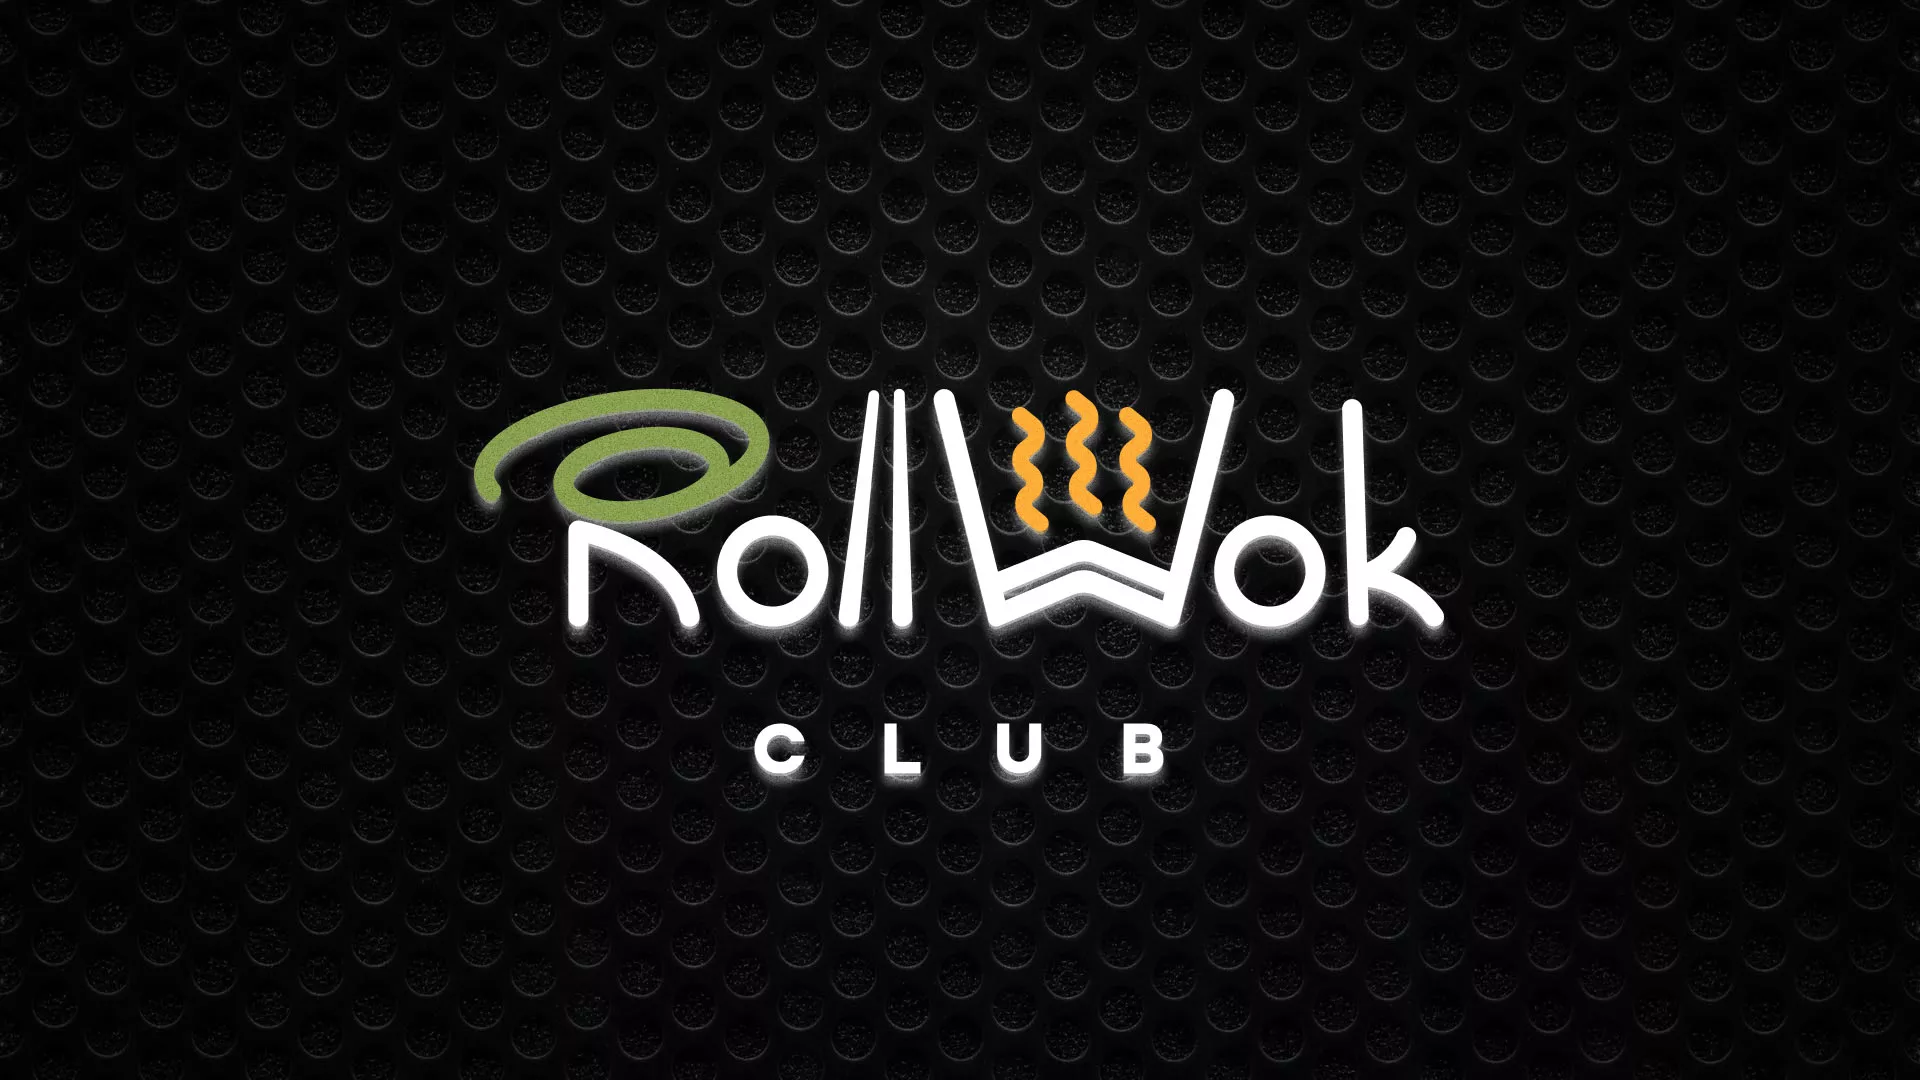 Брендирование торговых точек суши-бара «Roll Wok Club» в Кологриве